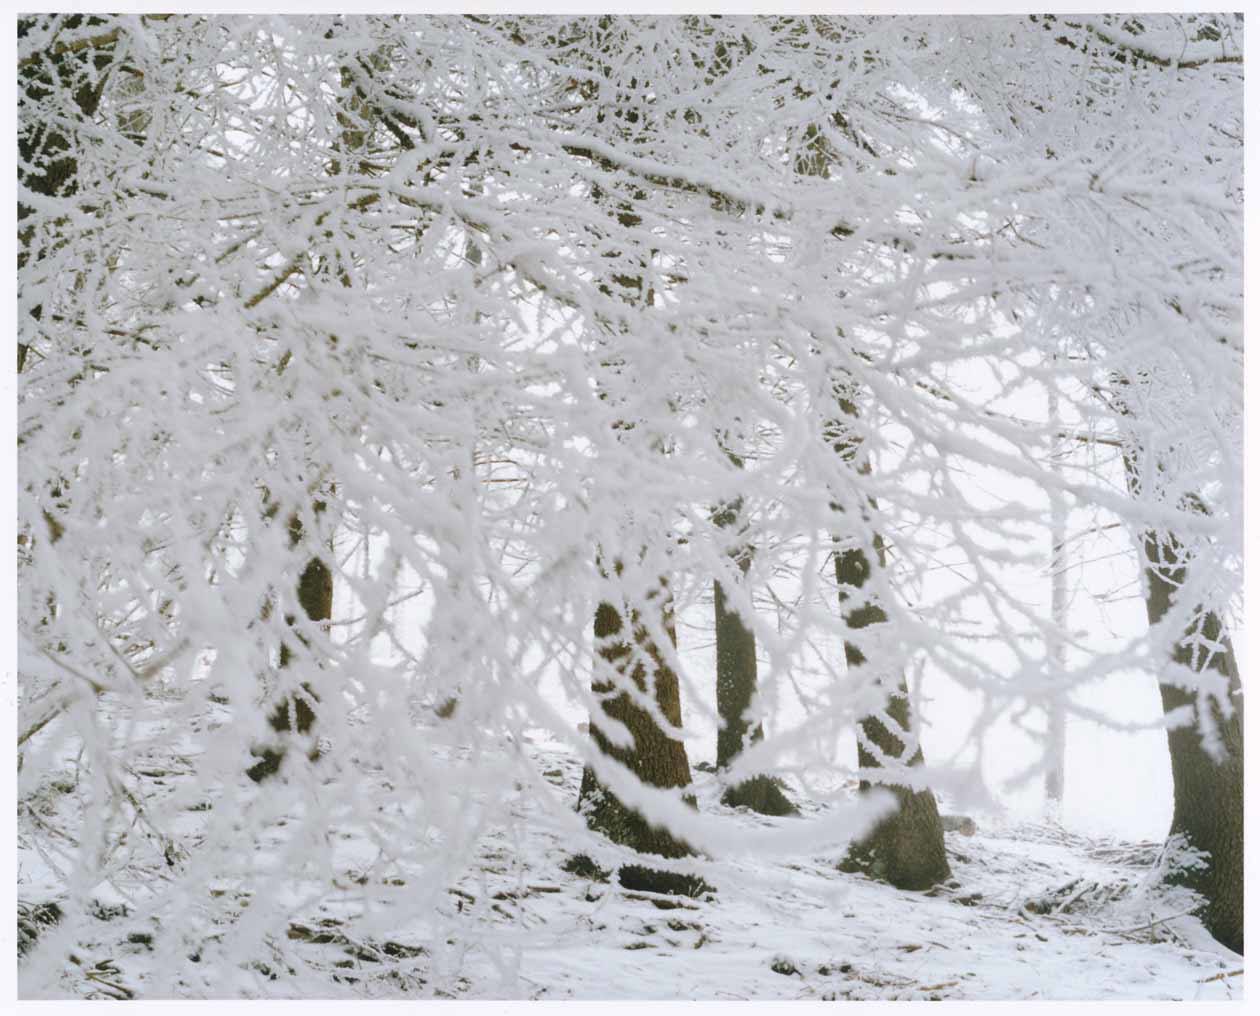 Naoki Ishikawa, Alpi Orobie, 2022, Campagna fotografica realizzata in occasione della mostra Vette di Luce, Accademia Carrara, 2023. Copyright © Accademia Carrara.